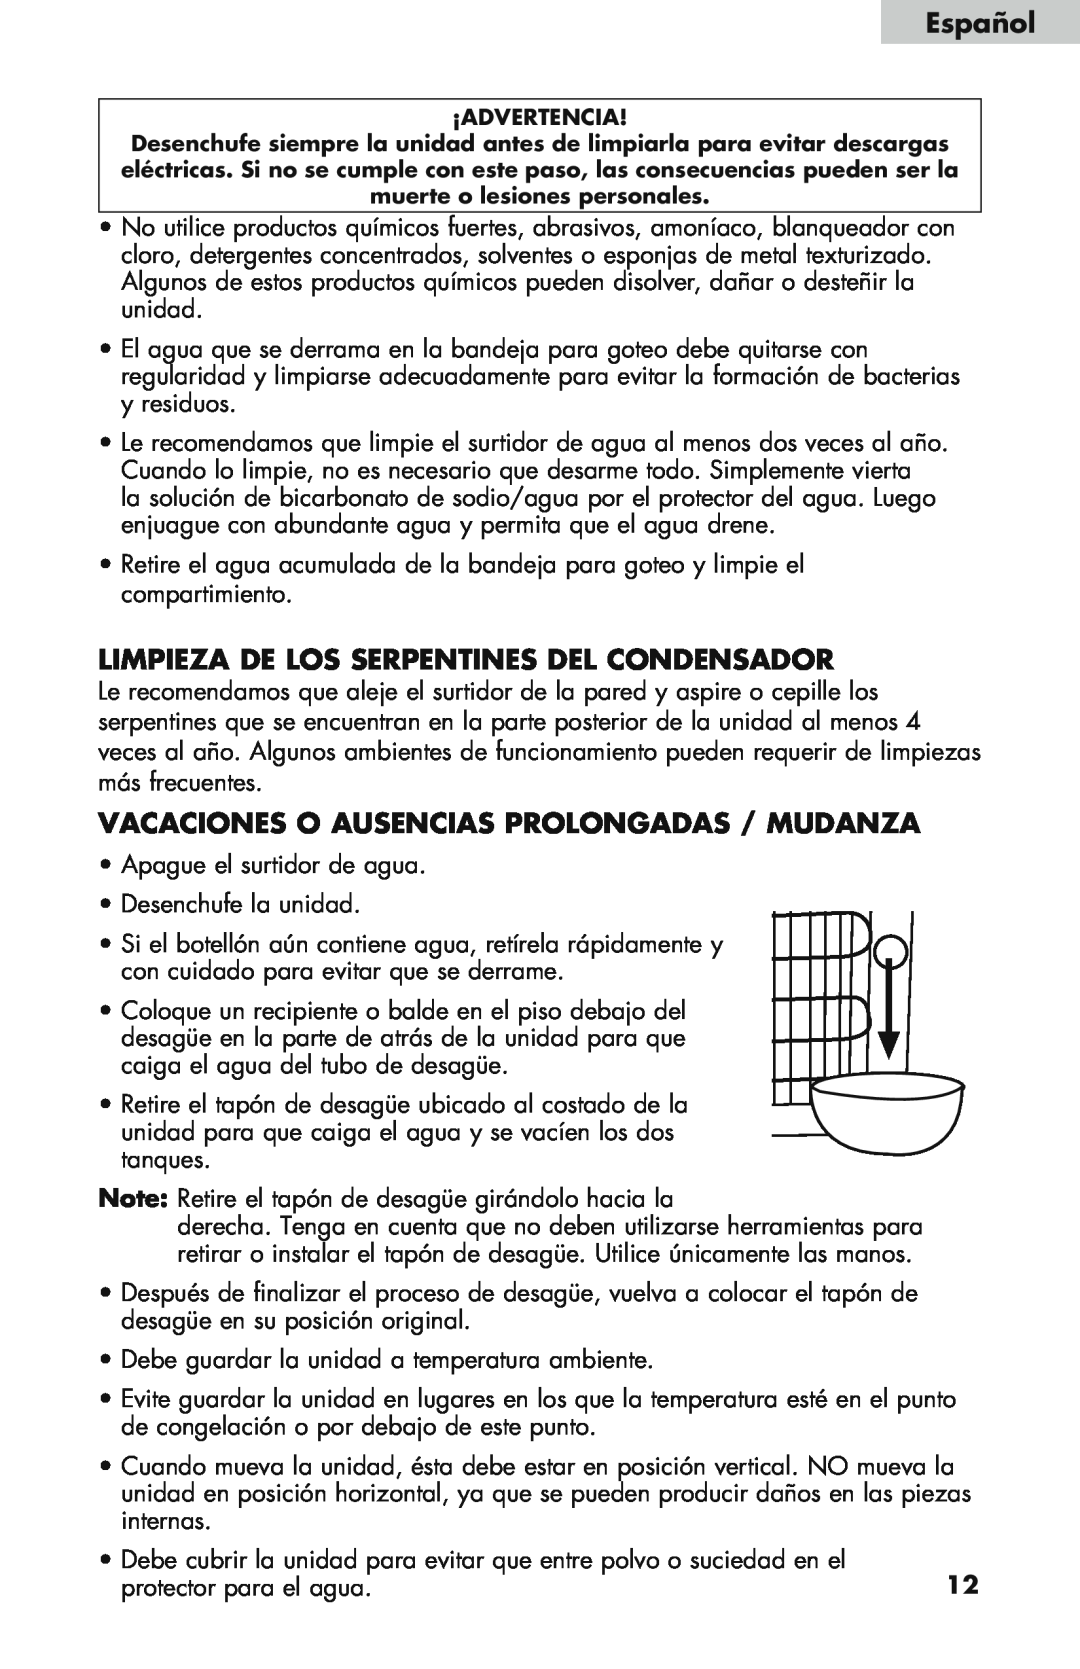 Haier WDNS115BW Limpieza de los serpentines del condensador, Vacaciones o ausencias prolongadas / Mudanza, Español 